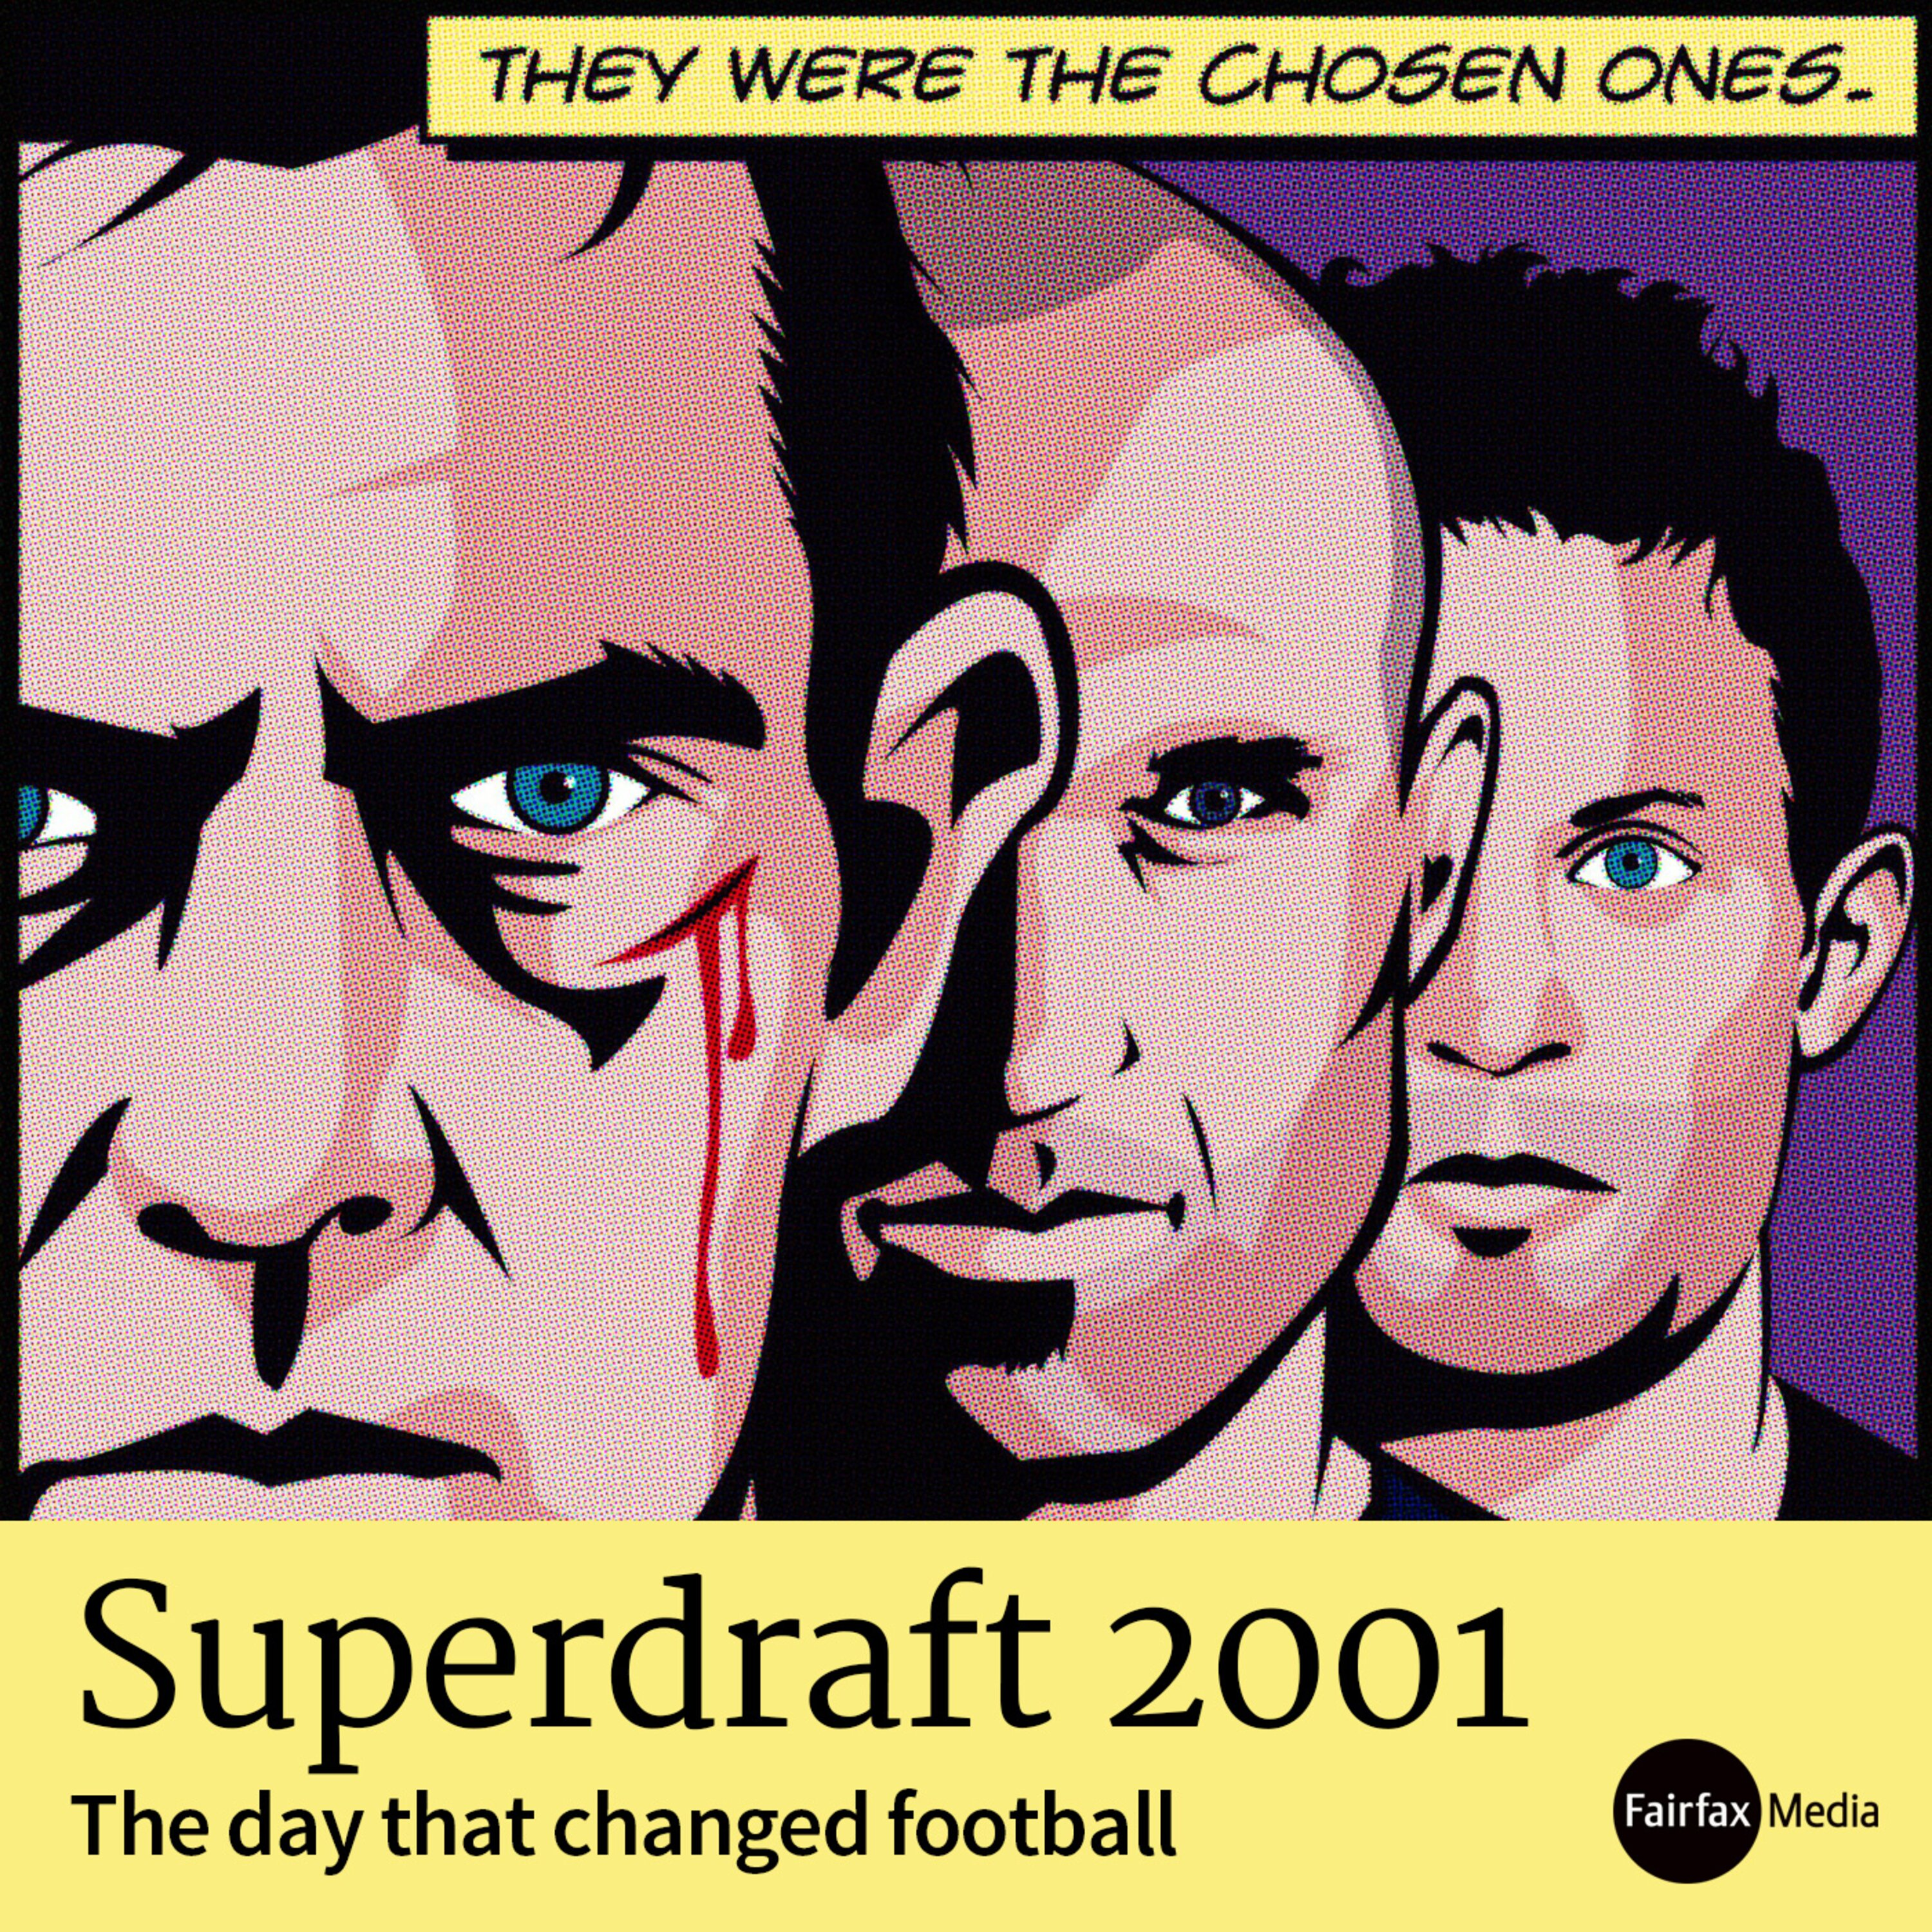 Coming soon - Superdraft 2001